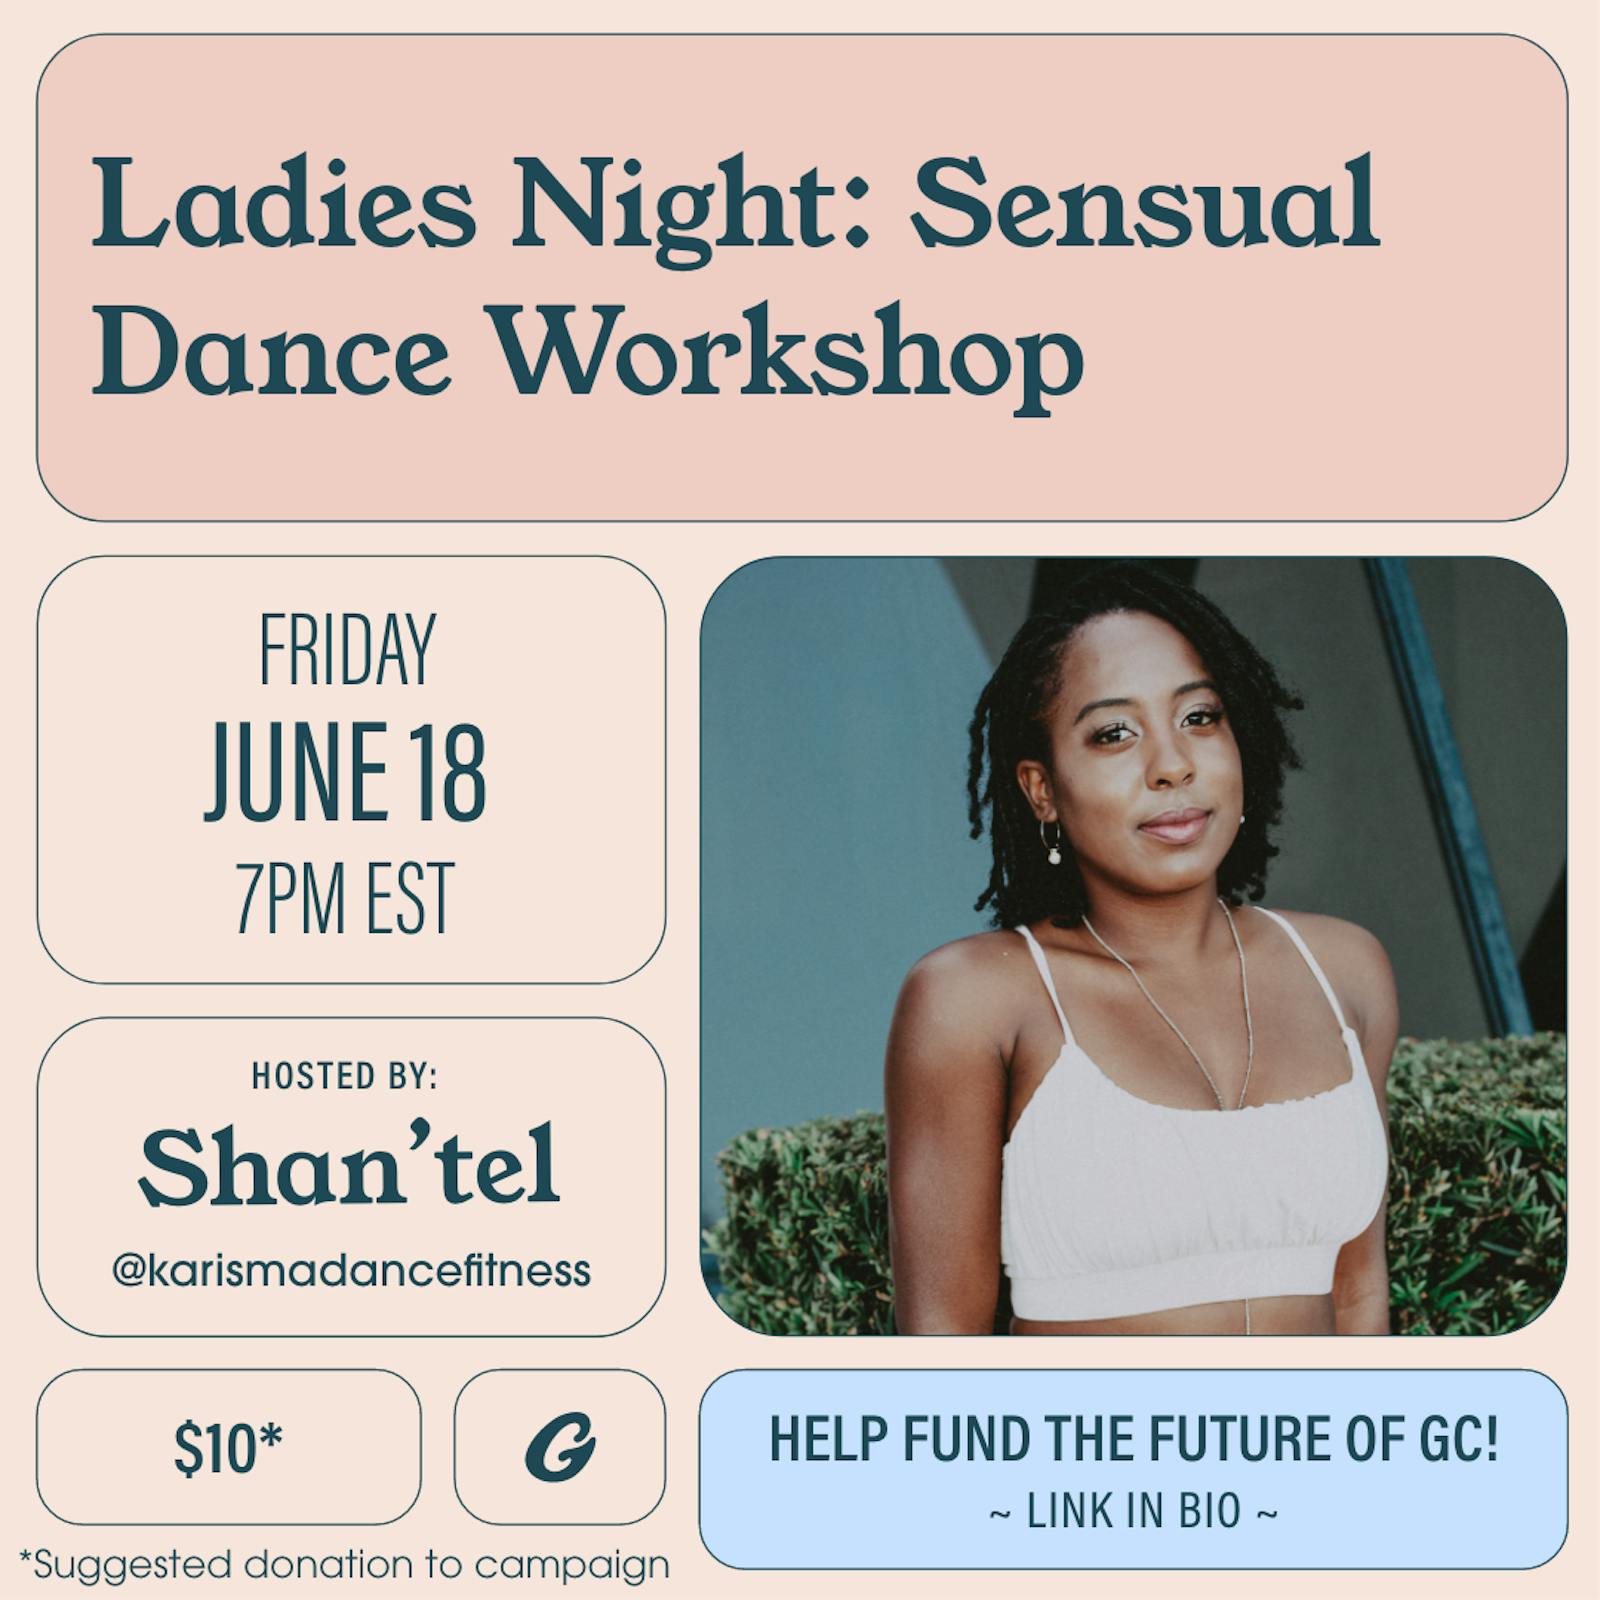 Ladies Night: Sensual Dance Workshop